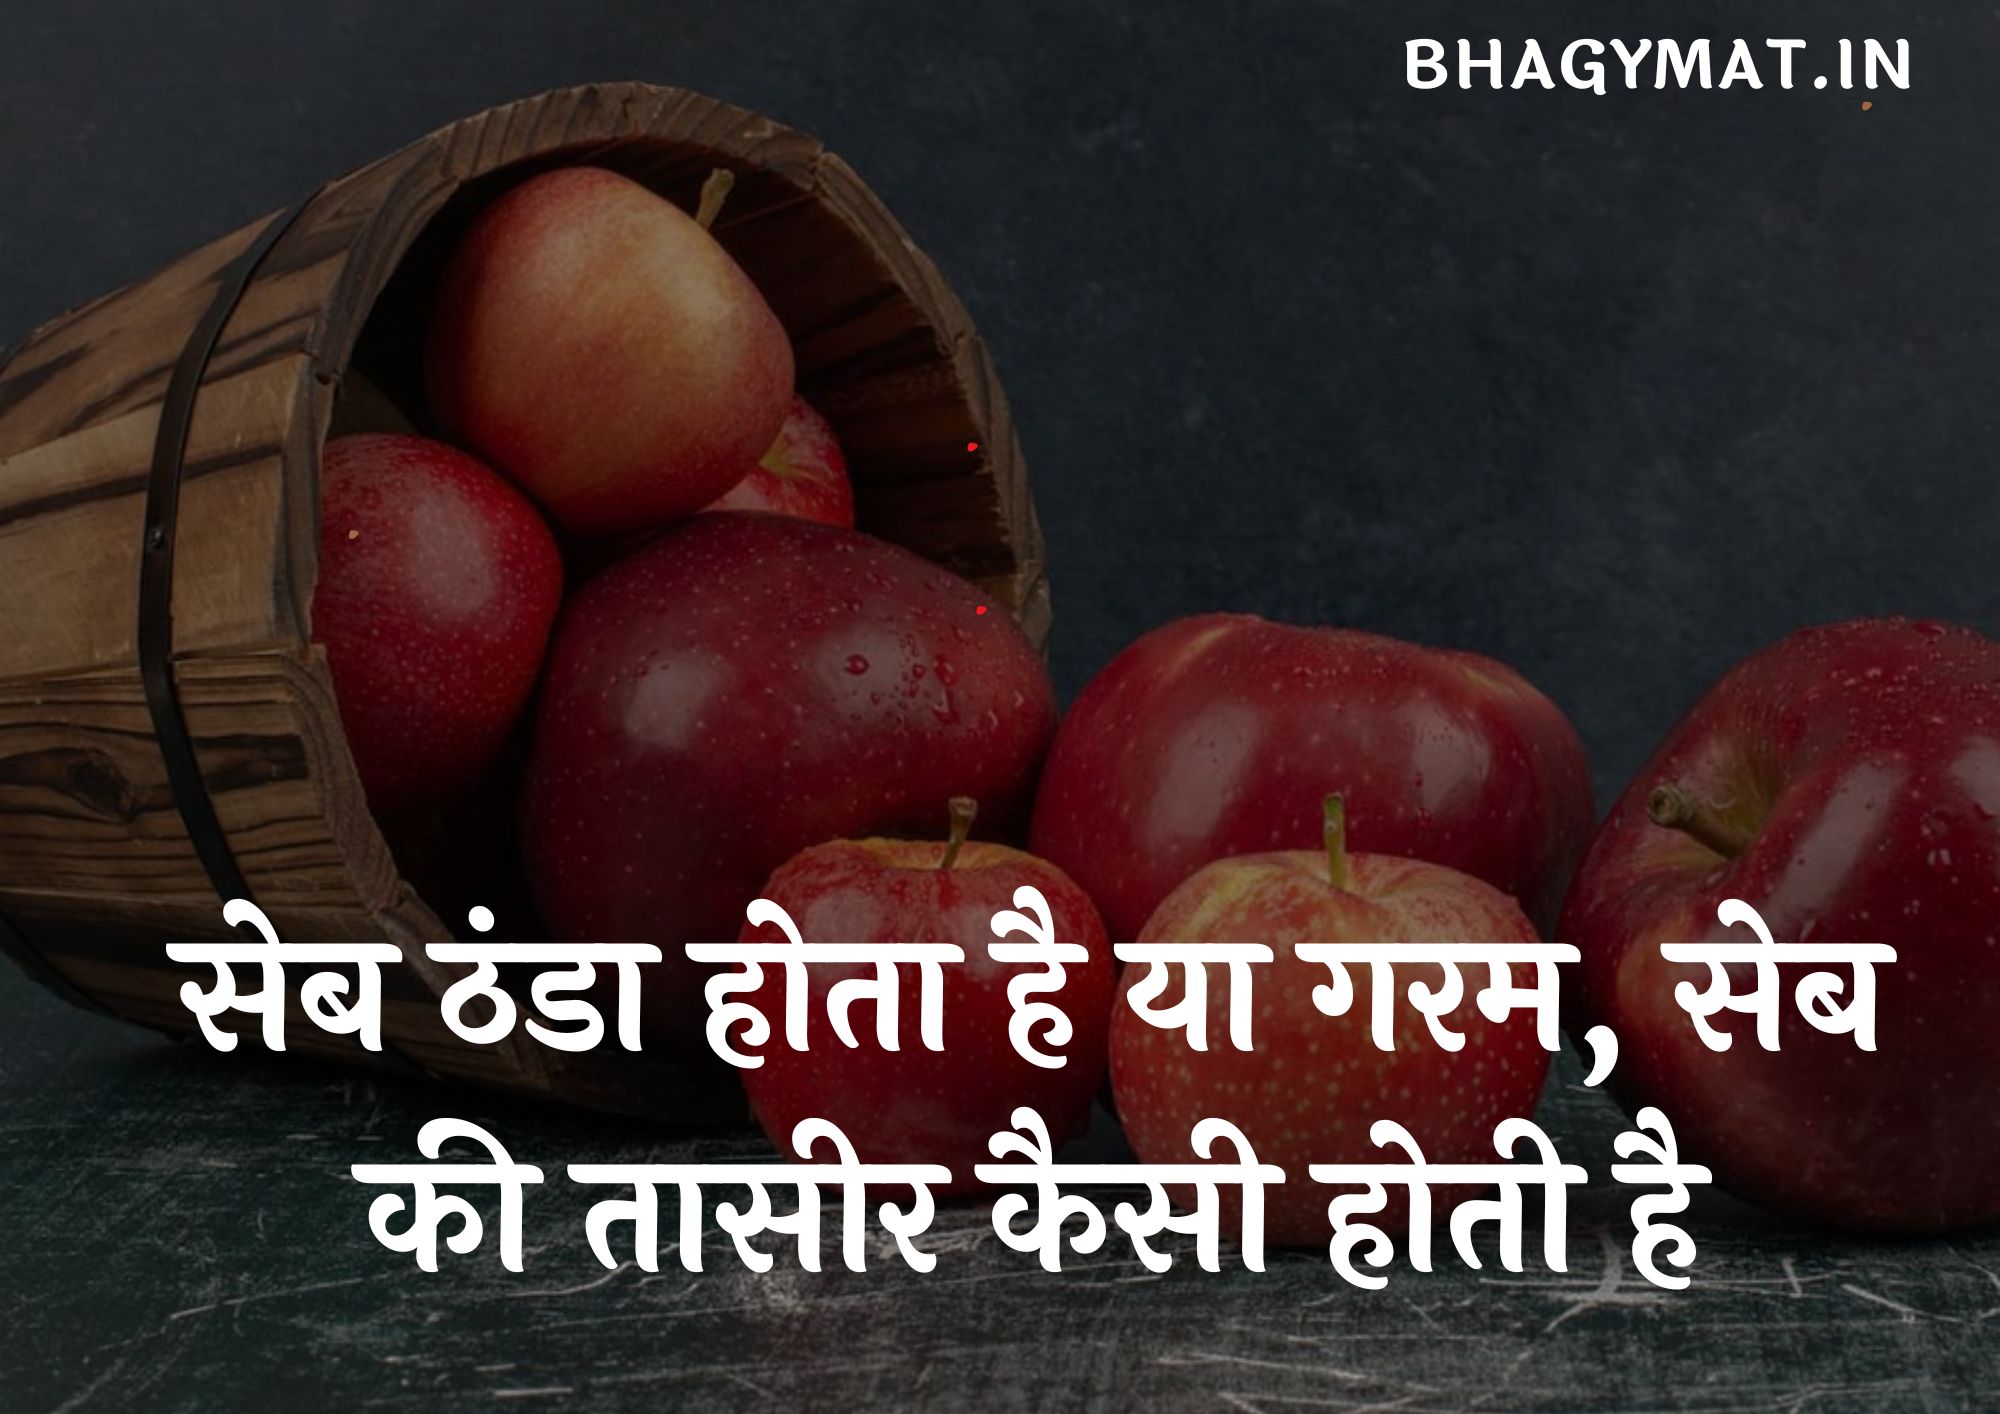 सेब ठंडा होता है या गरम, सेब की तासीर कैसी होती है, सेब की तासीर ठंडी होती है या गर्म - Apple Ki Taseer Kaisi Hoti Hai